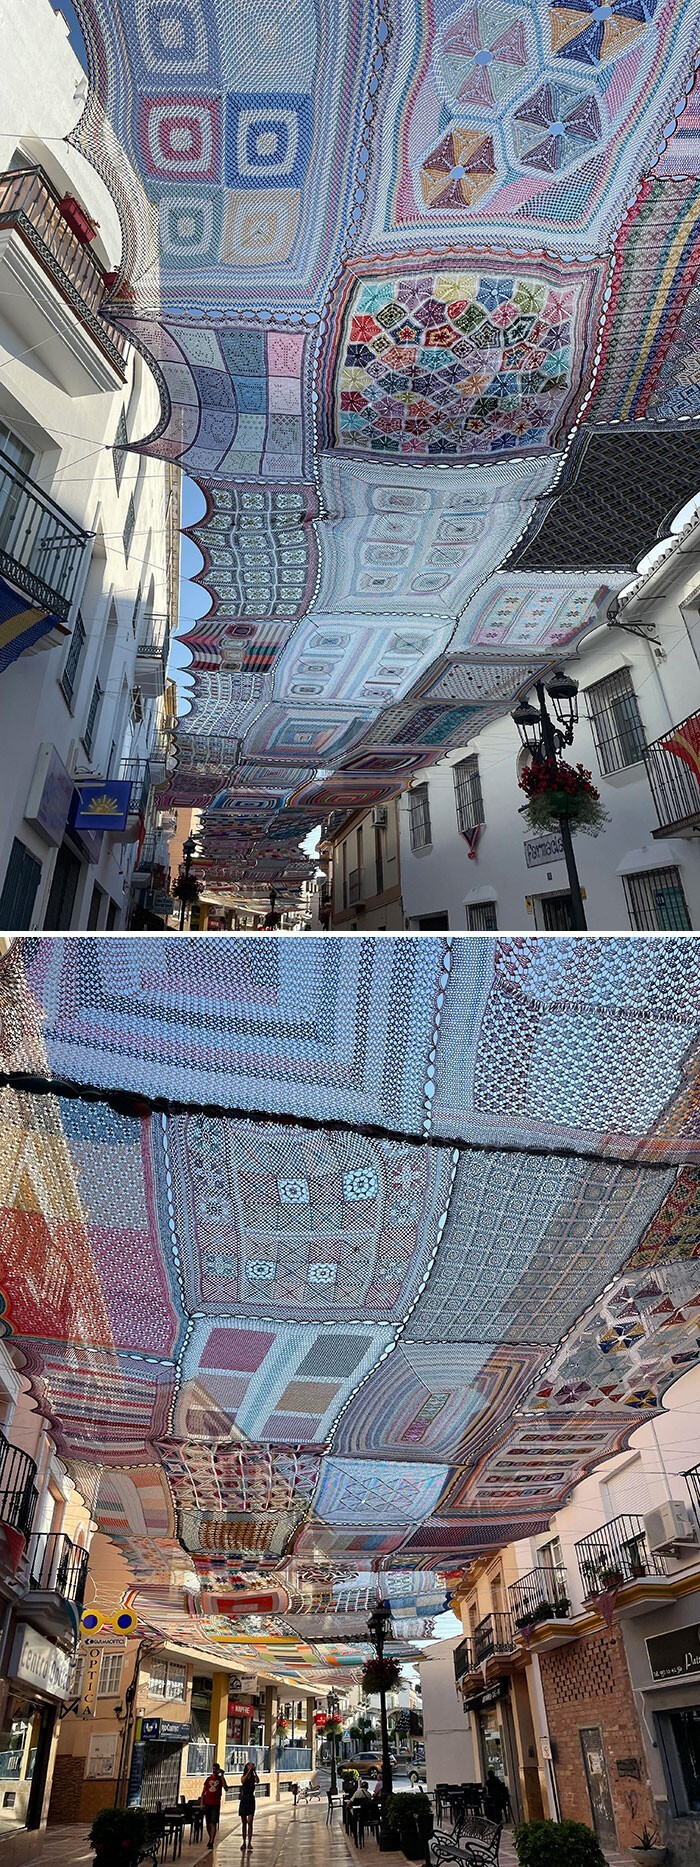 9. "Женщины в моей деревне в Испании вяжут вот такие коврики и натягивают их над улицей"